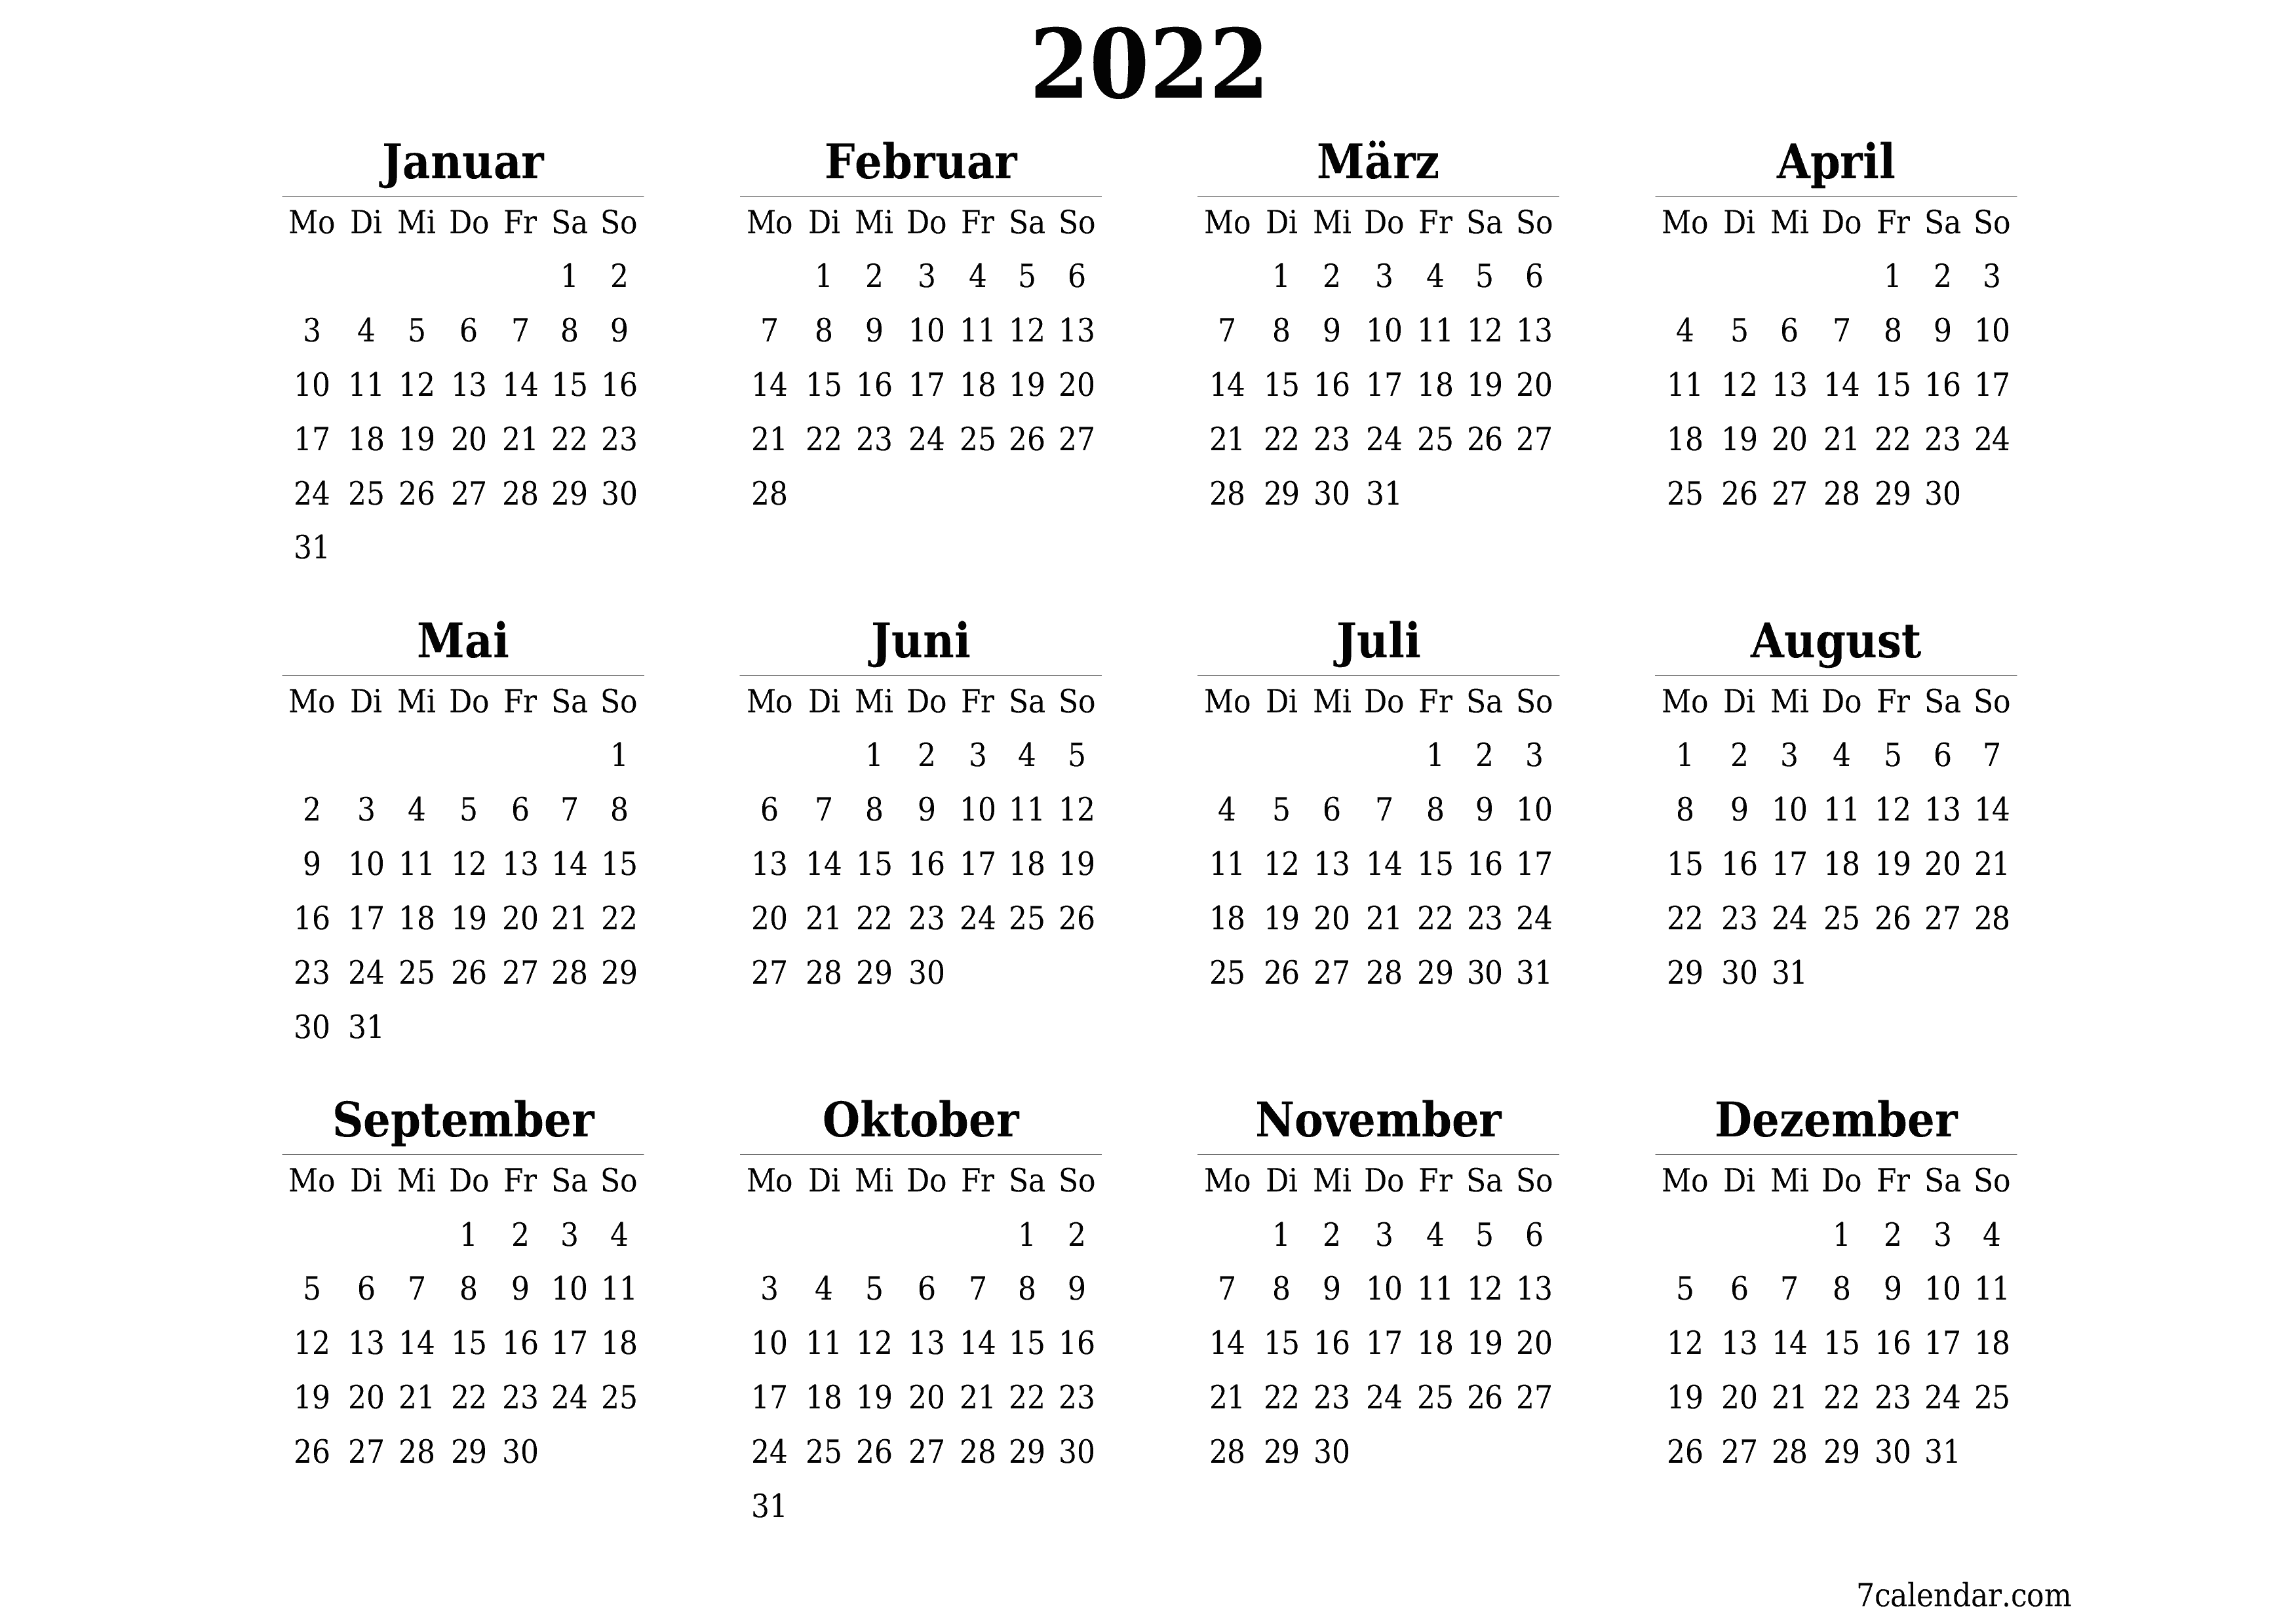 Jahresplanerkalender für das Jahr 2022 mit Notizen leeren, speichern und als PDF PNG German - 7calendar.com drucken